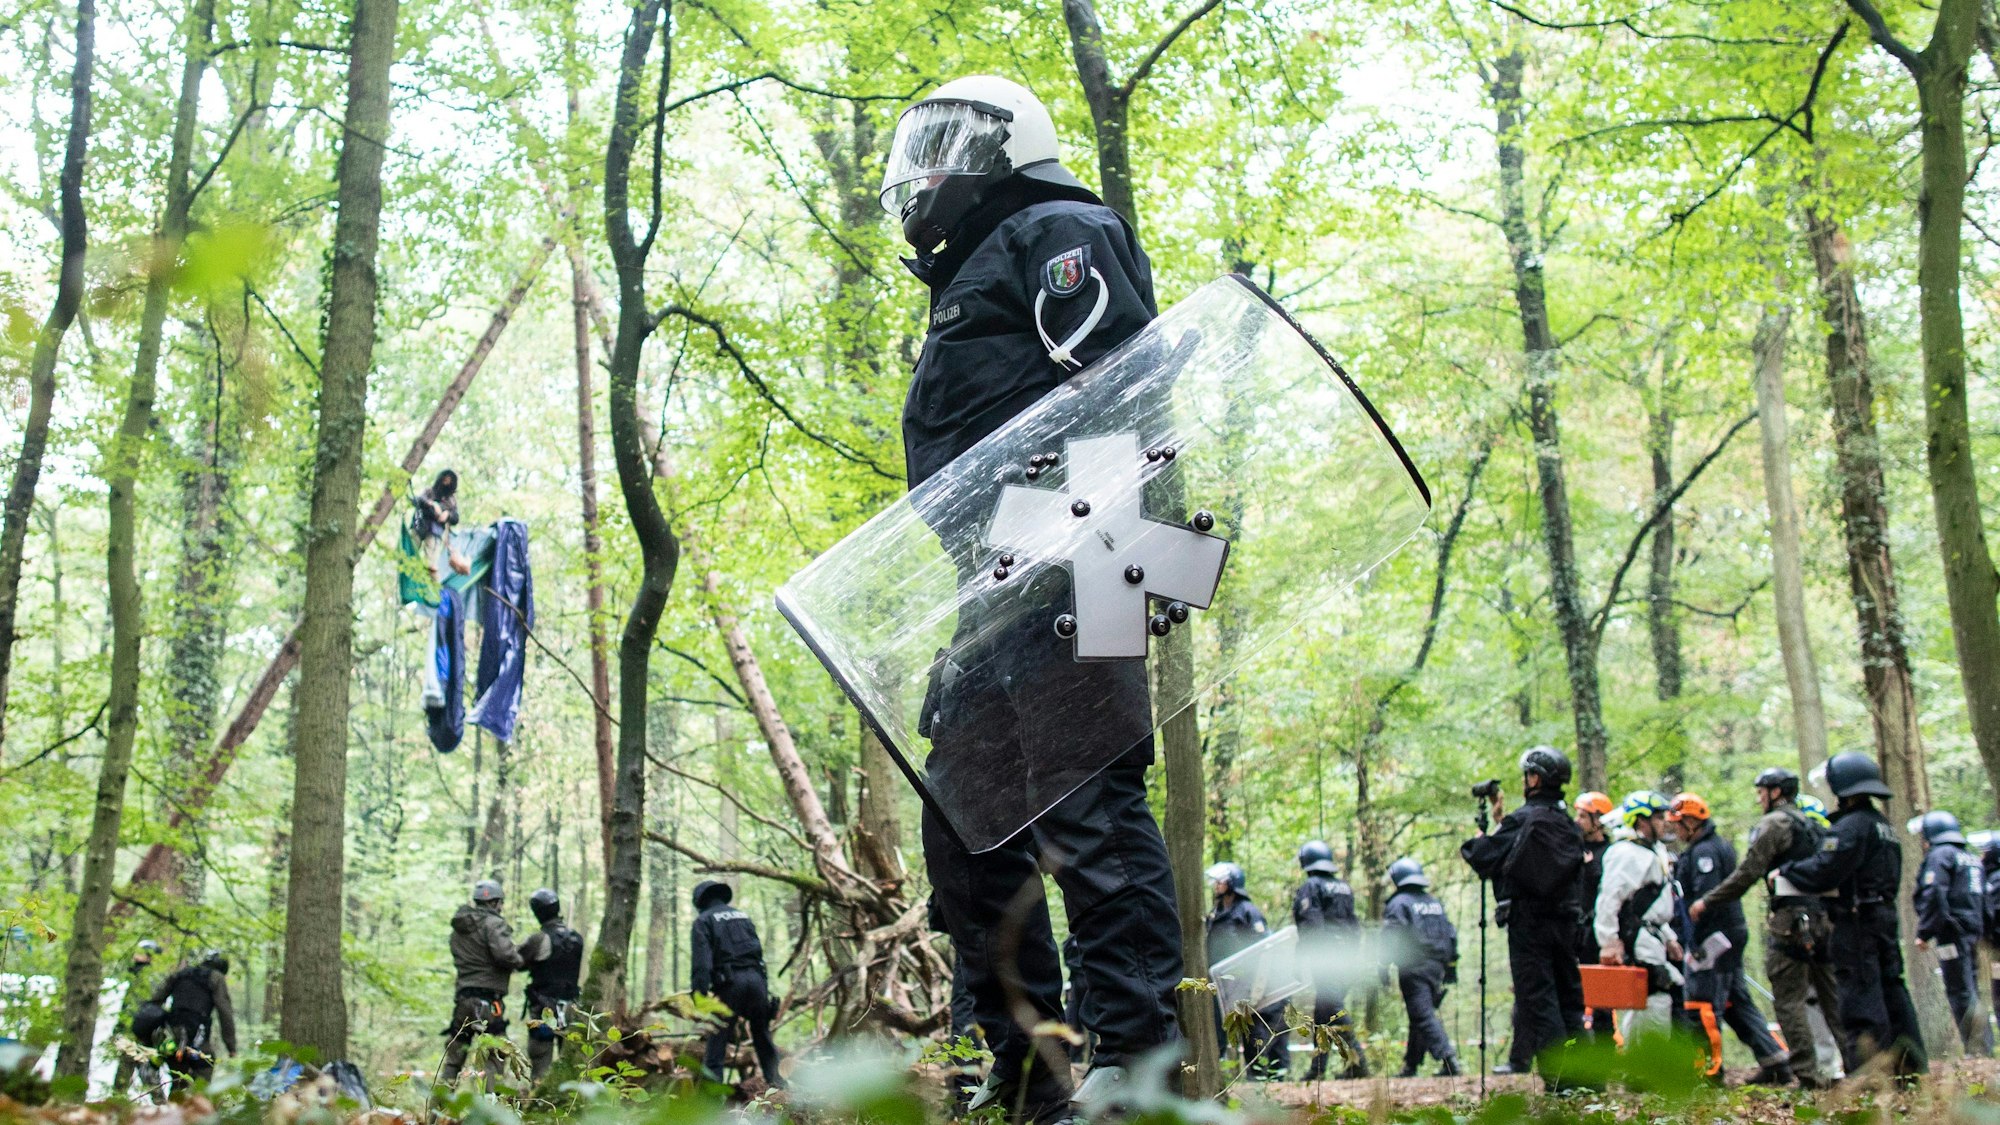 Polizisten stehen im Wald vor einer Barrikade, in der sich eine Aktivistin festgebunden hat. Vorne im Bild ist ein Polizist mit Schild und Helm zu sehen.